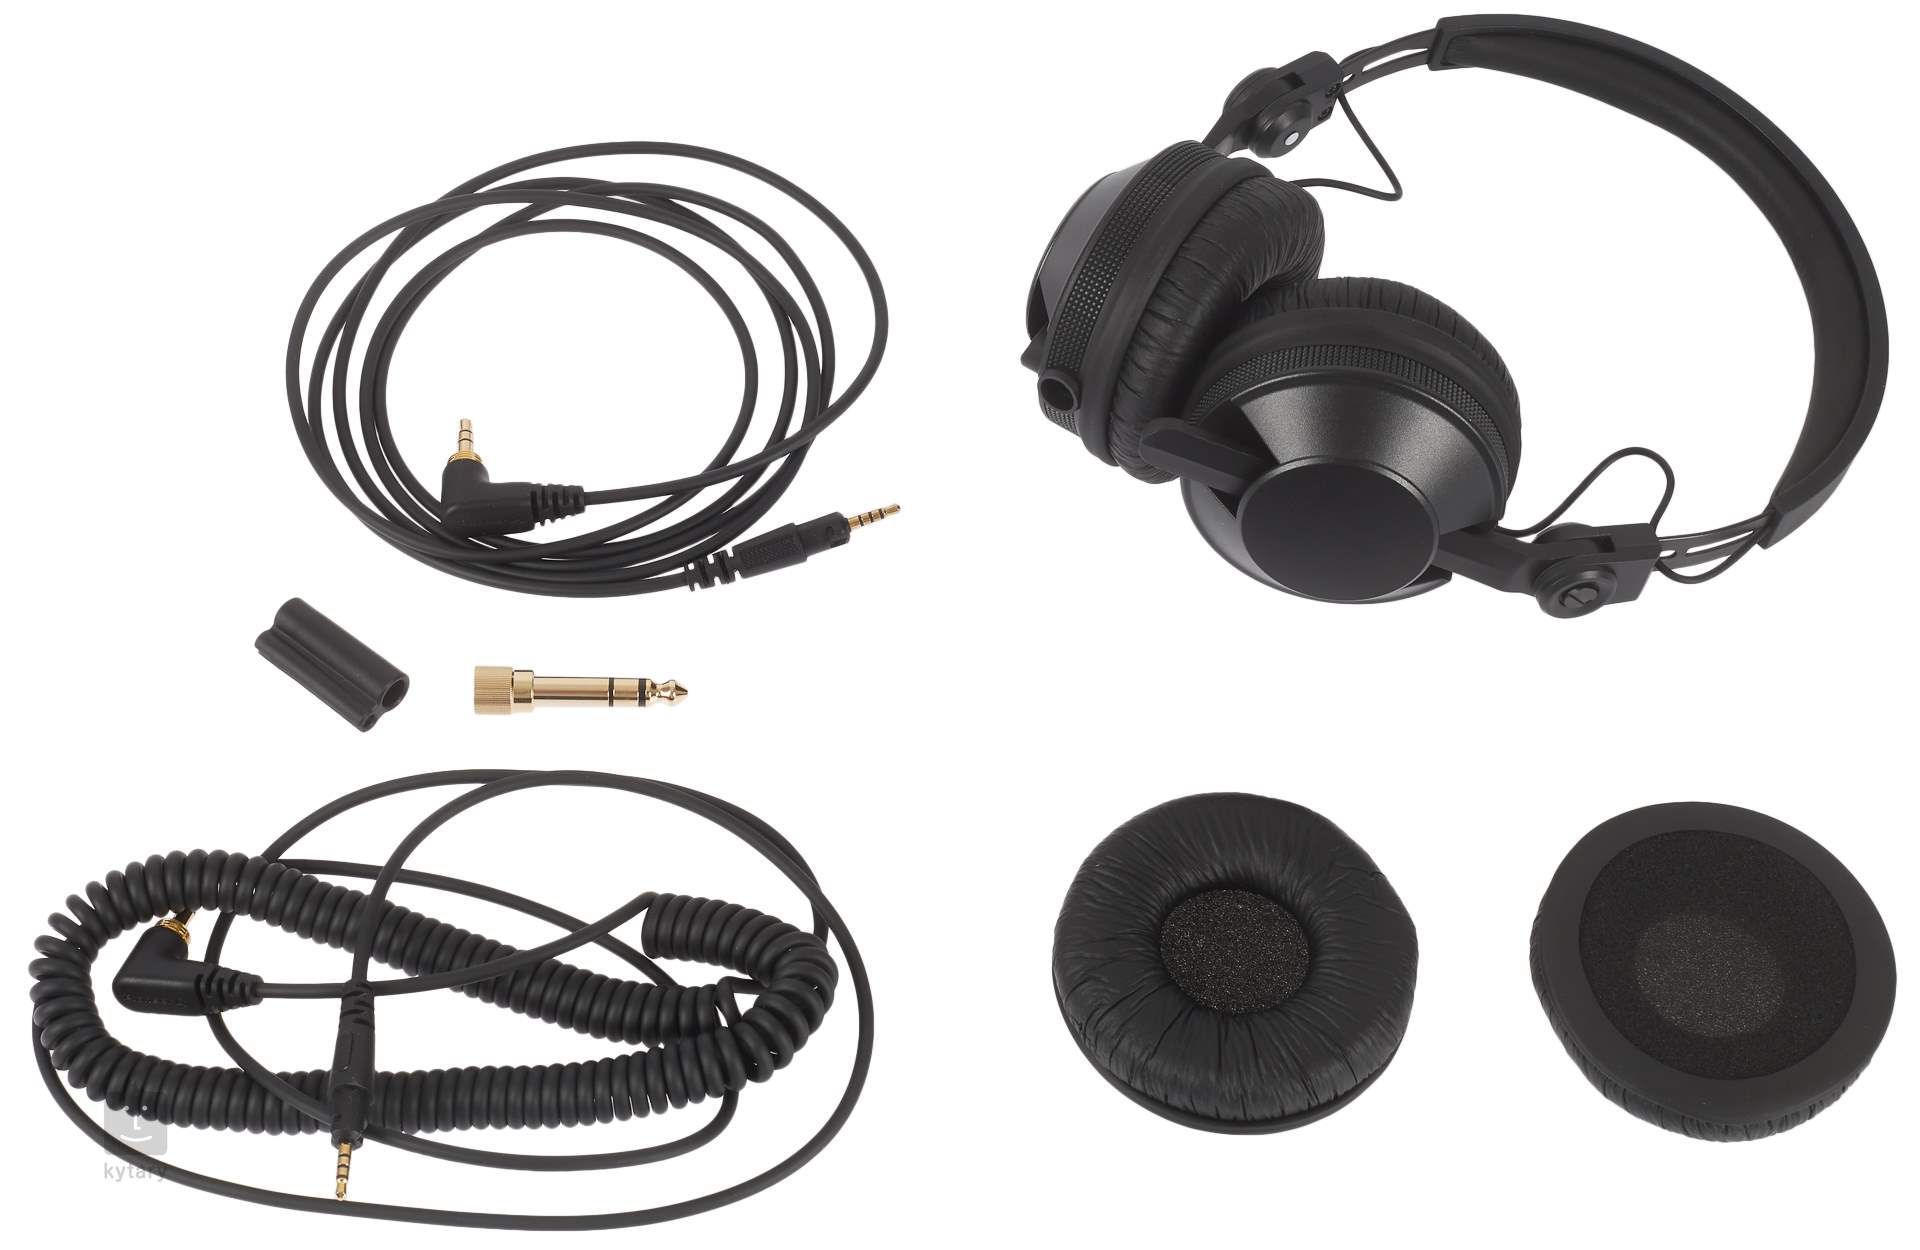  Pioneer DJ HDJ-CX - Auriculares profesionales para DJ